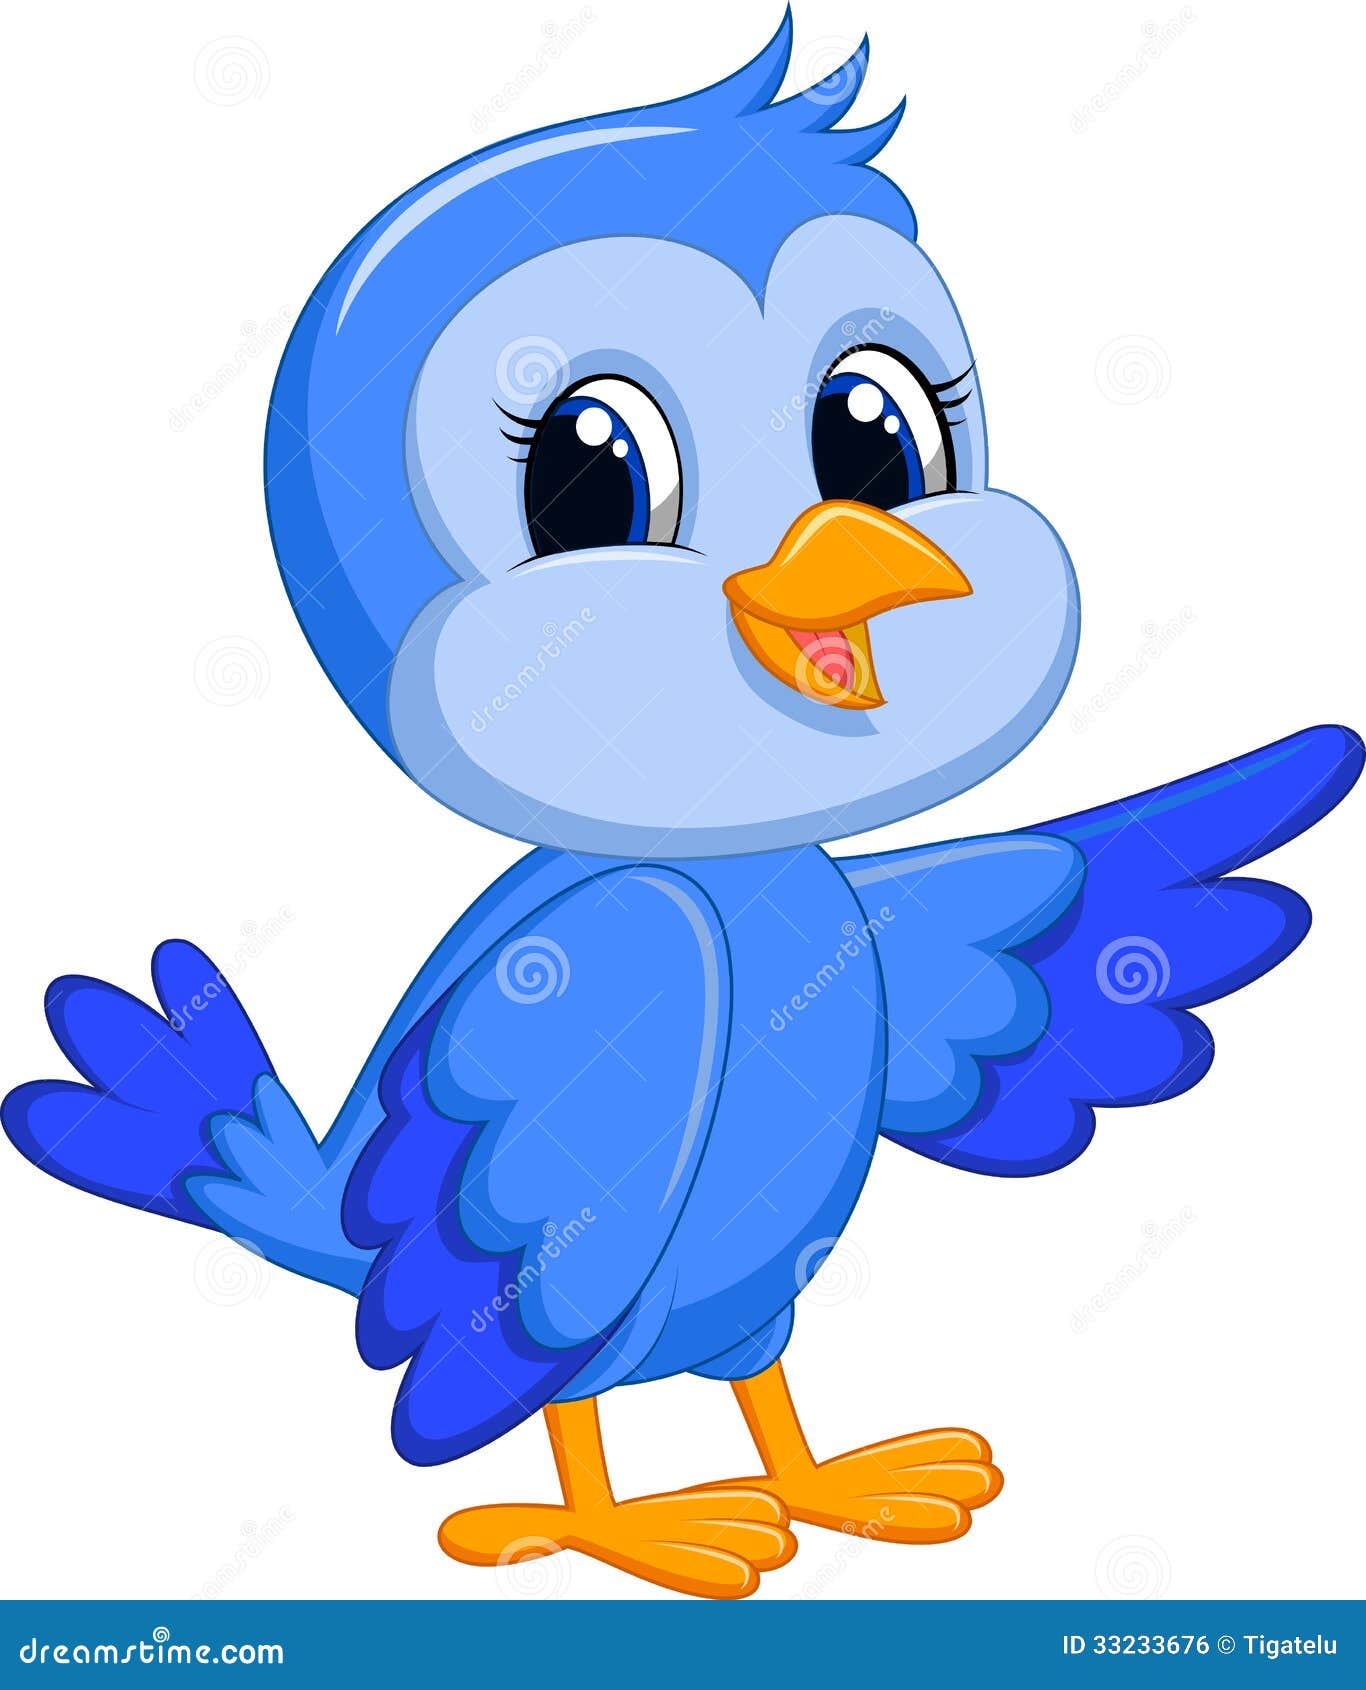 Cute blue bird cartoon stock vector. Illustration of artwork - 33233676